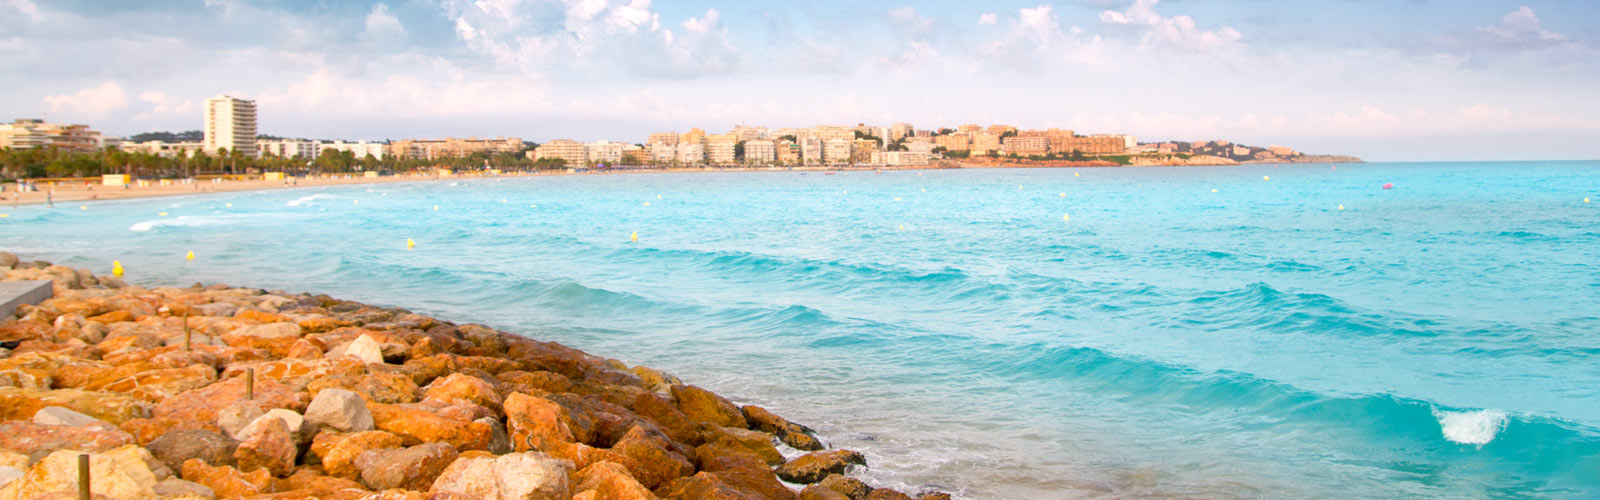 Salou, un pequeo paraso en el Mediterrneo Playas del mundo